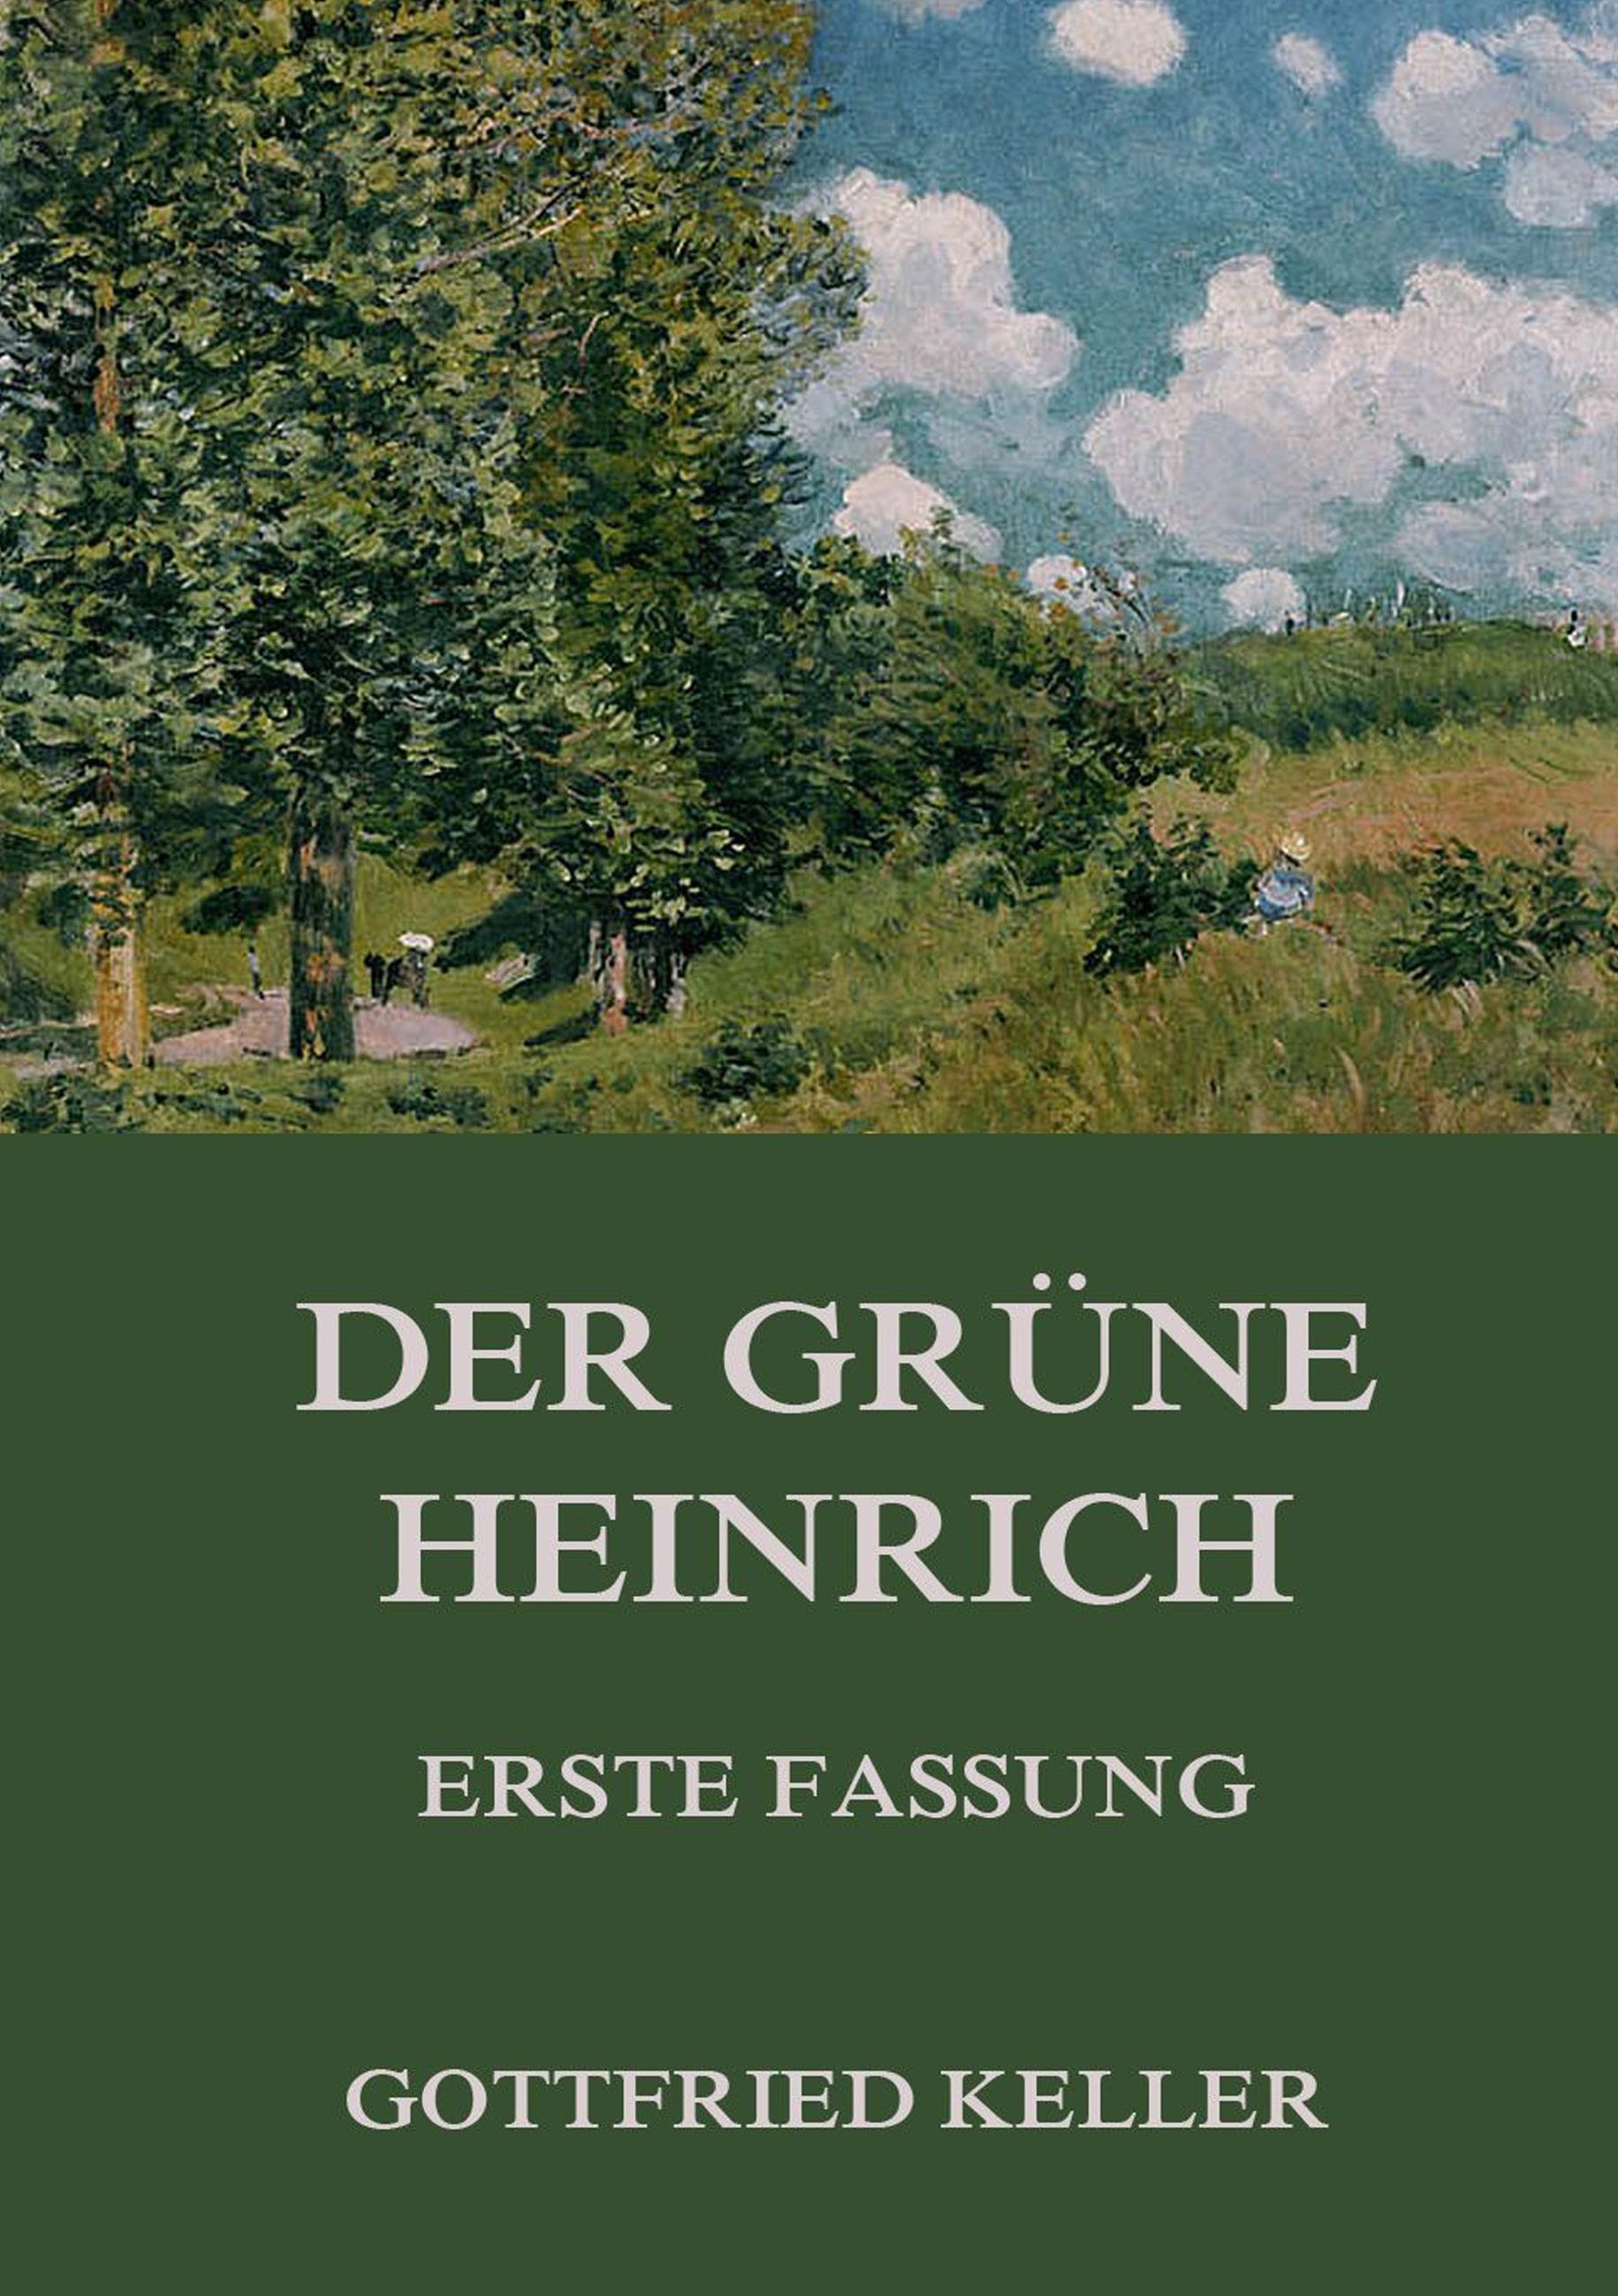 Der grüne Heinrich (Erste Fassung) | Gottfried Keller | Taschenbuch | Paperback | 536 S. | Deutsch | 2016 | Jazzybee Verlag | EAN 9783849685980 - Keller, Gottfried